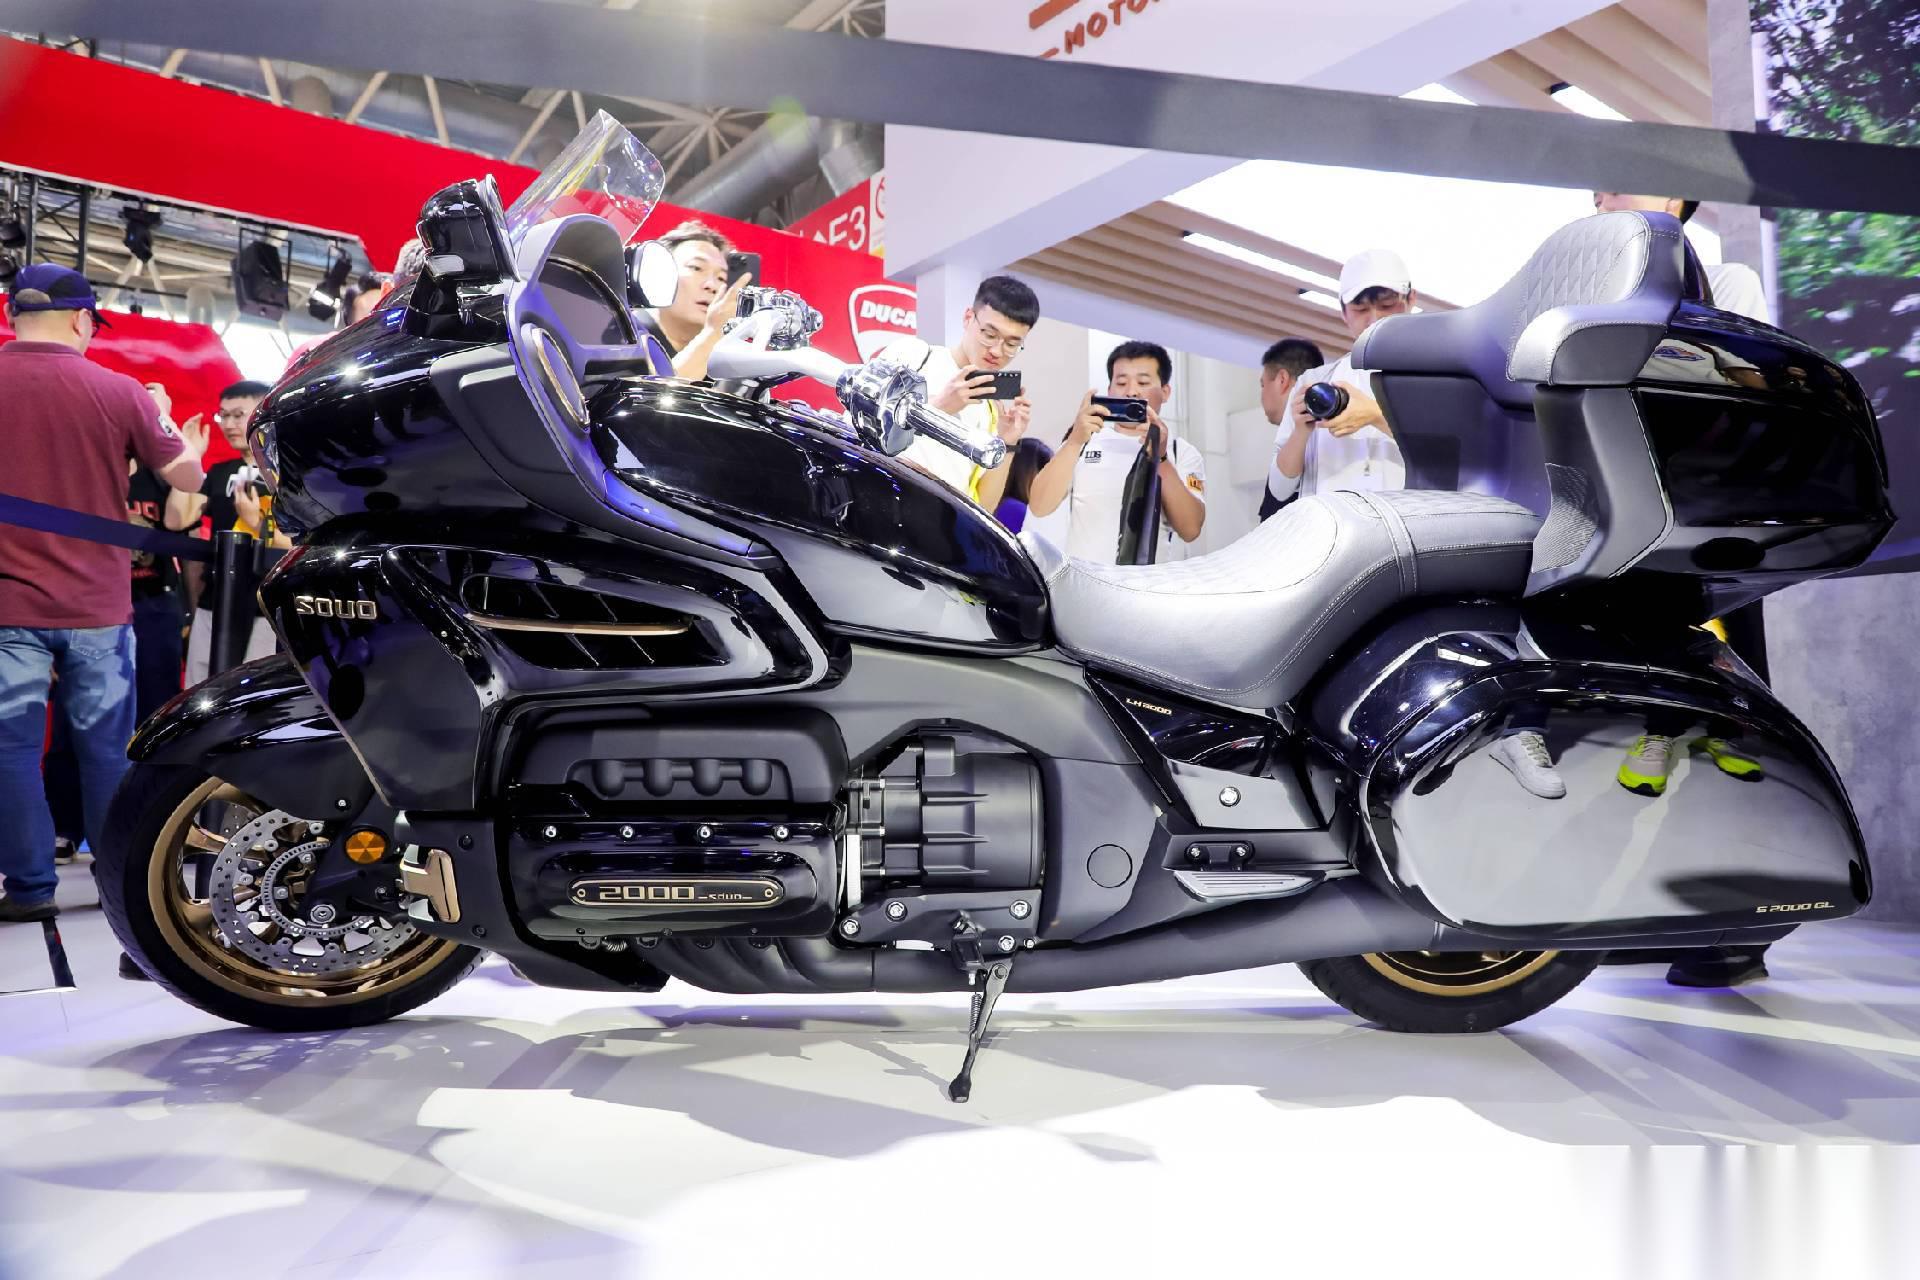 长城推出了 souo摩托车,全球首款装有v8水平对置发动机的摩托车哦